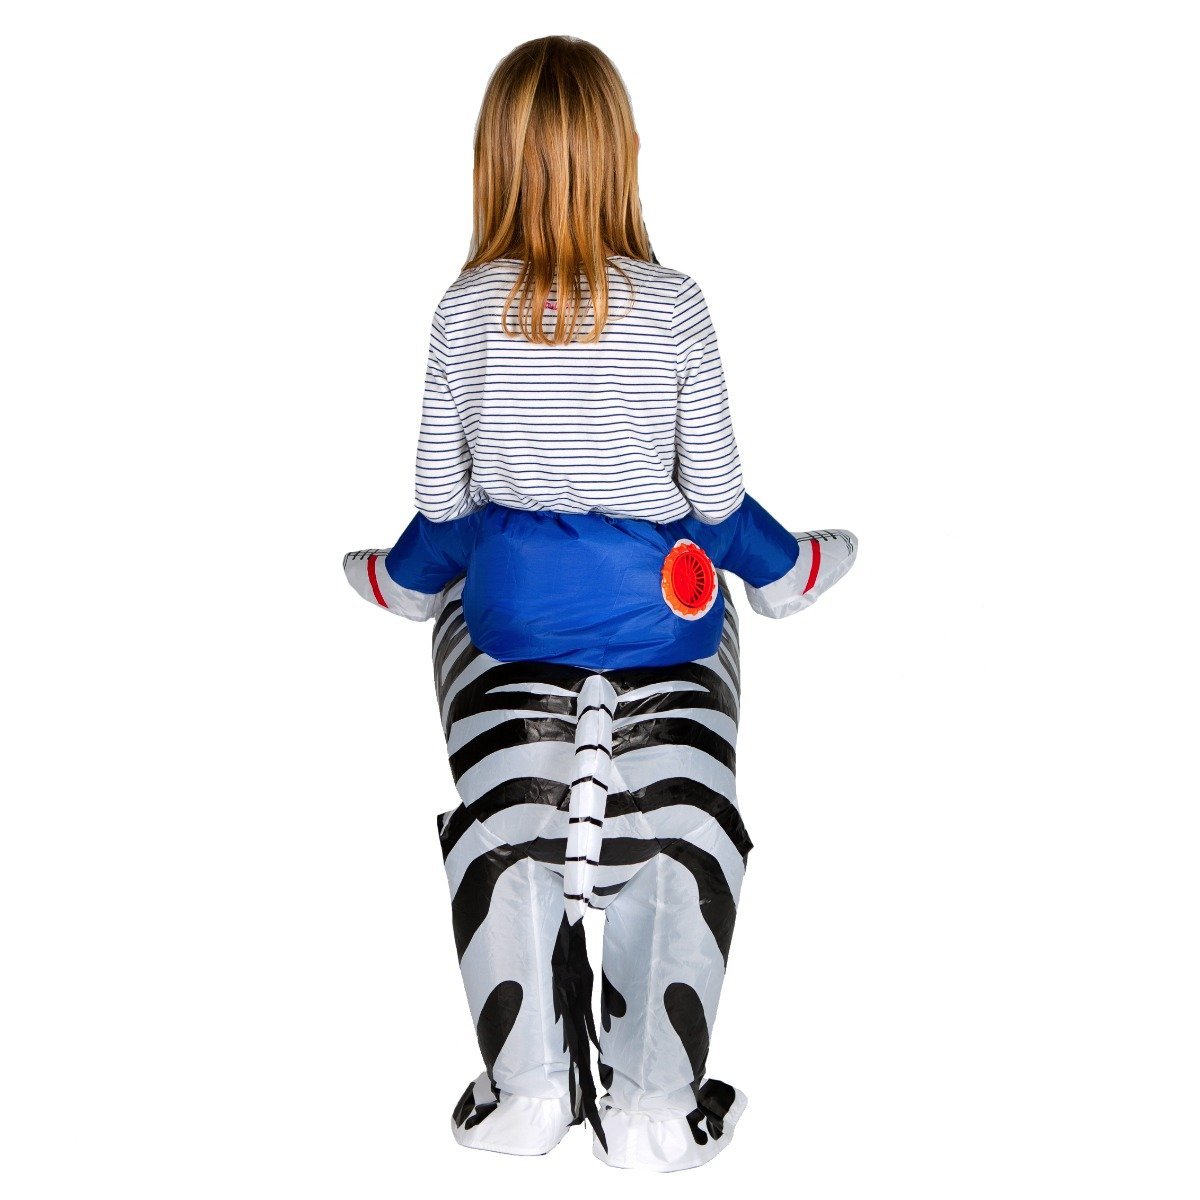 Bodysocks - Kids Inflatable Zebra Costume